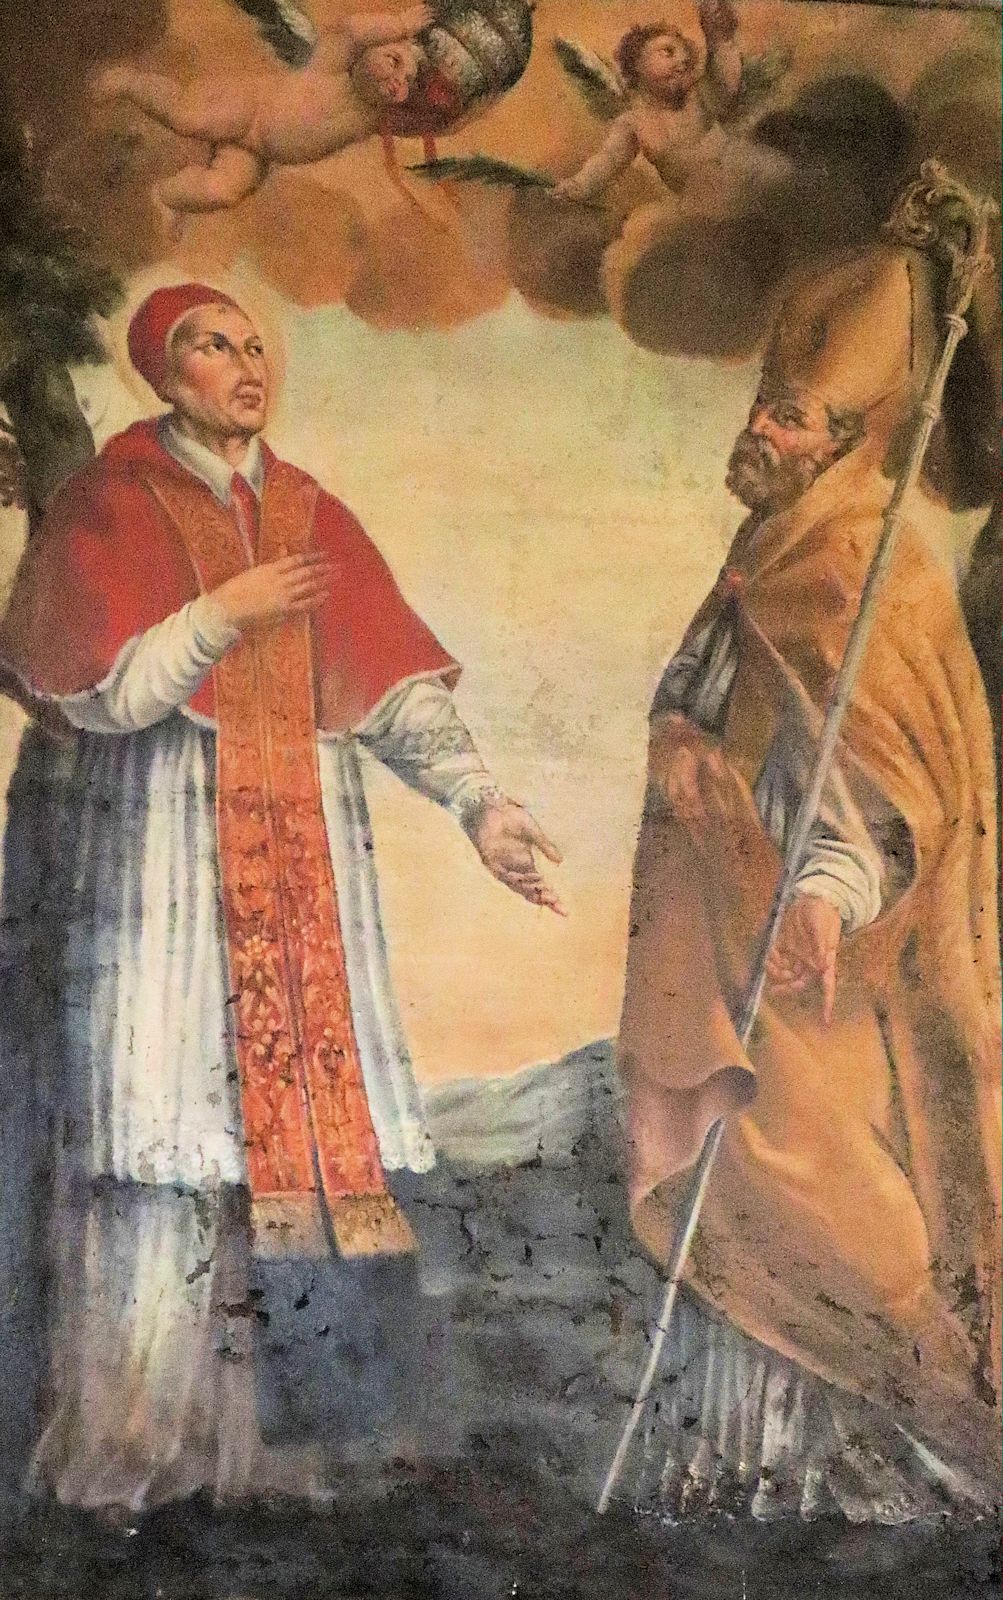 Coelestin (links) und Pamphilus von Sulmona, um 1800, Altarbild in der Kathedrale in Sulmona